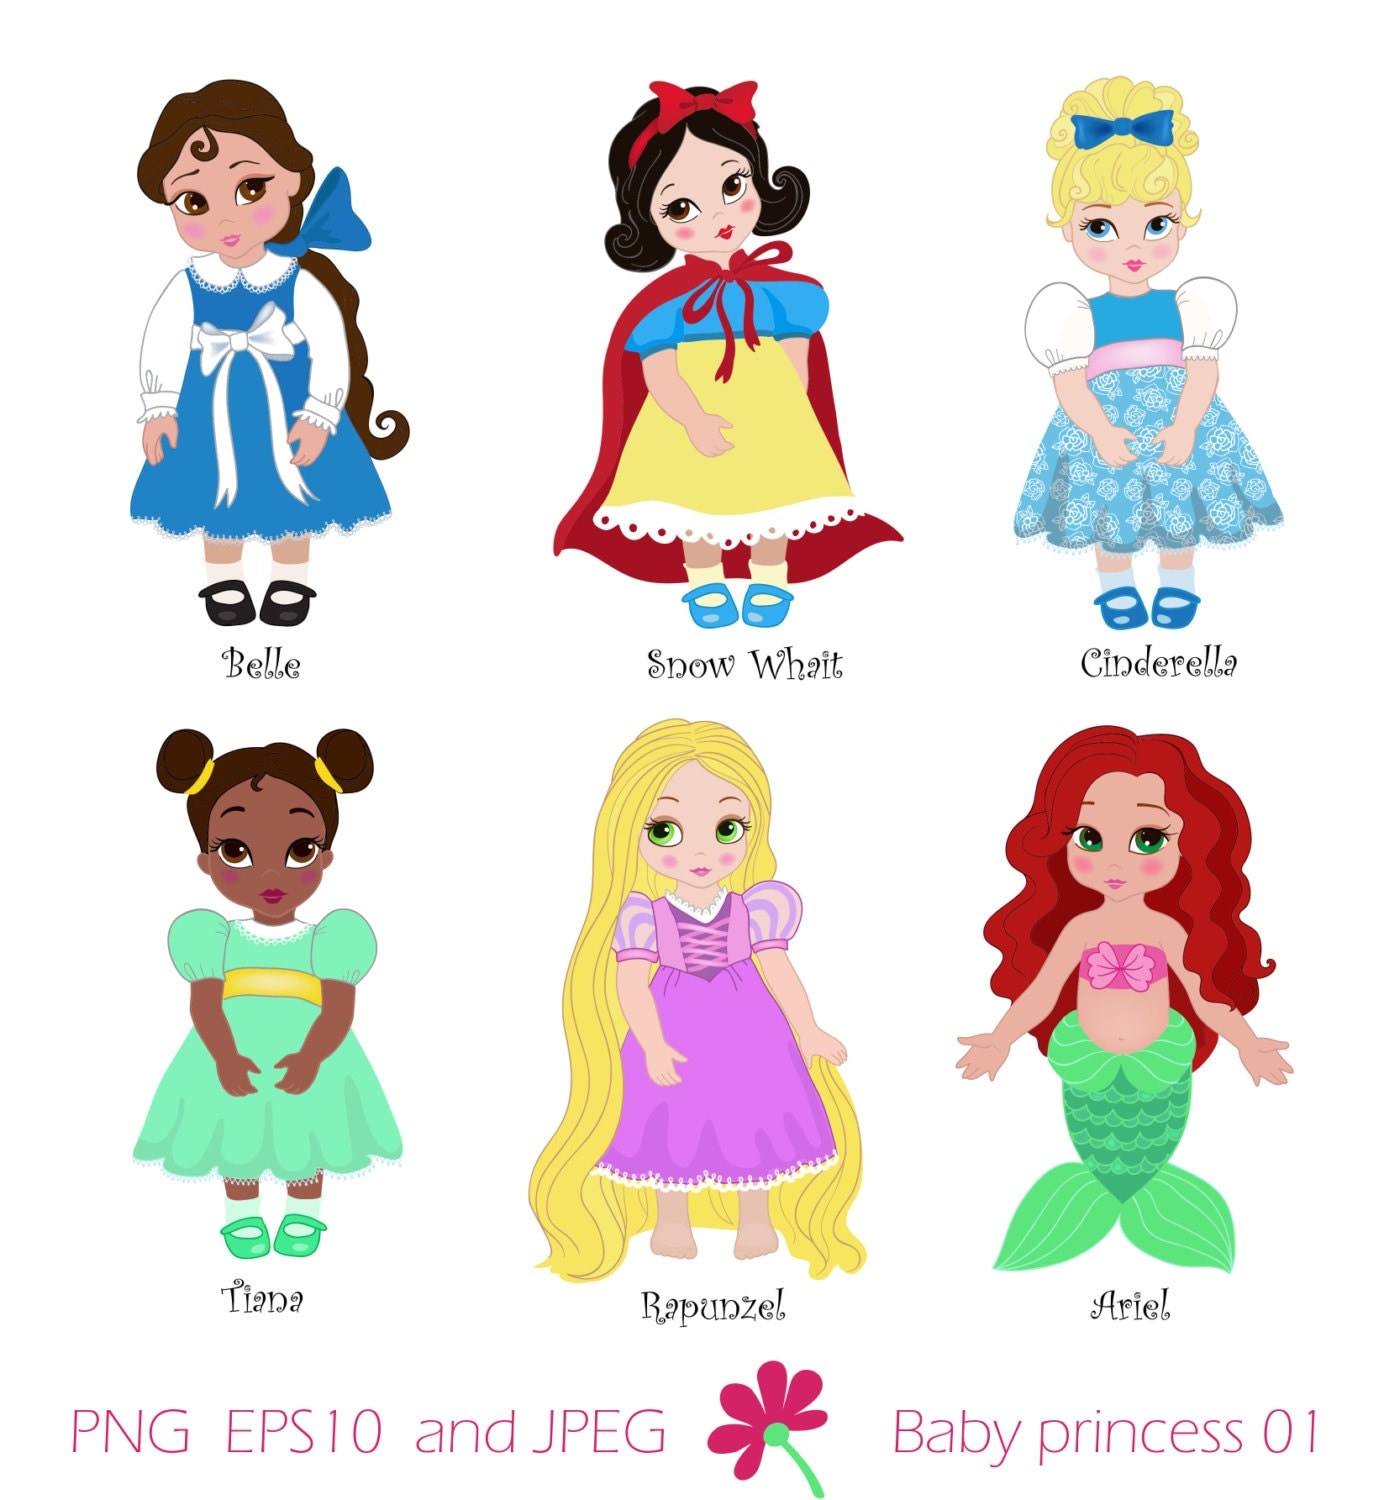 Download Baby princess Disney vectorizada - Imagui